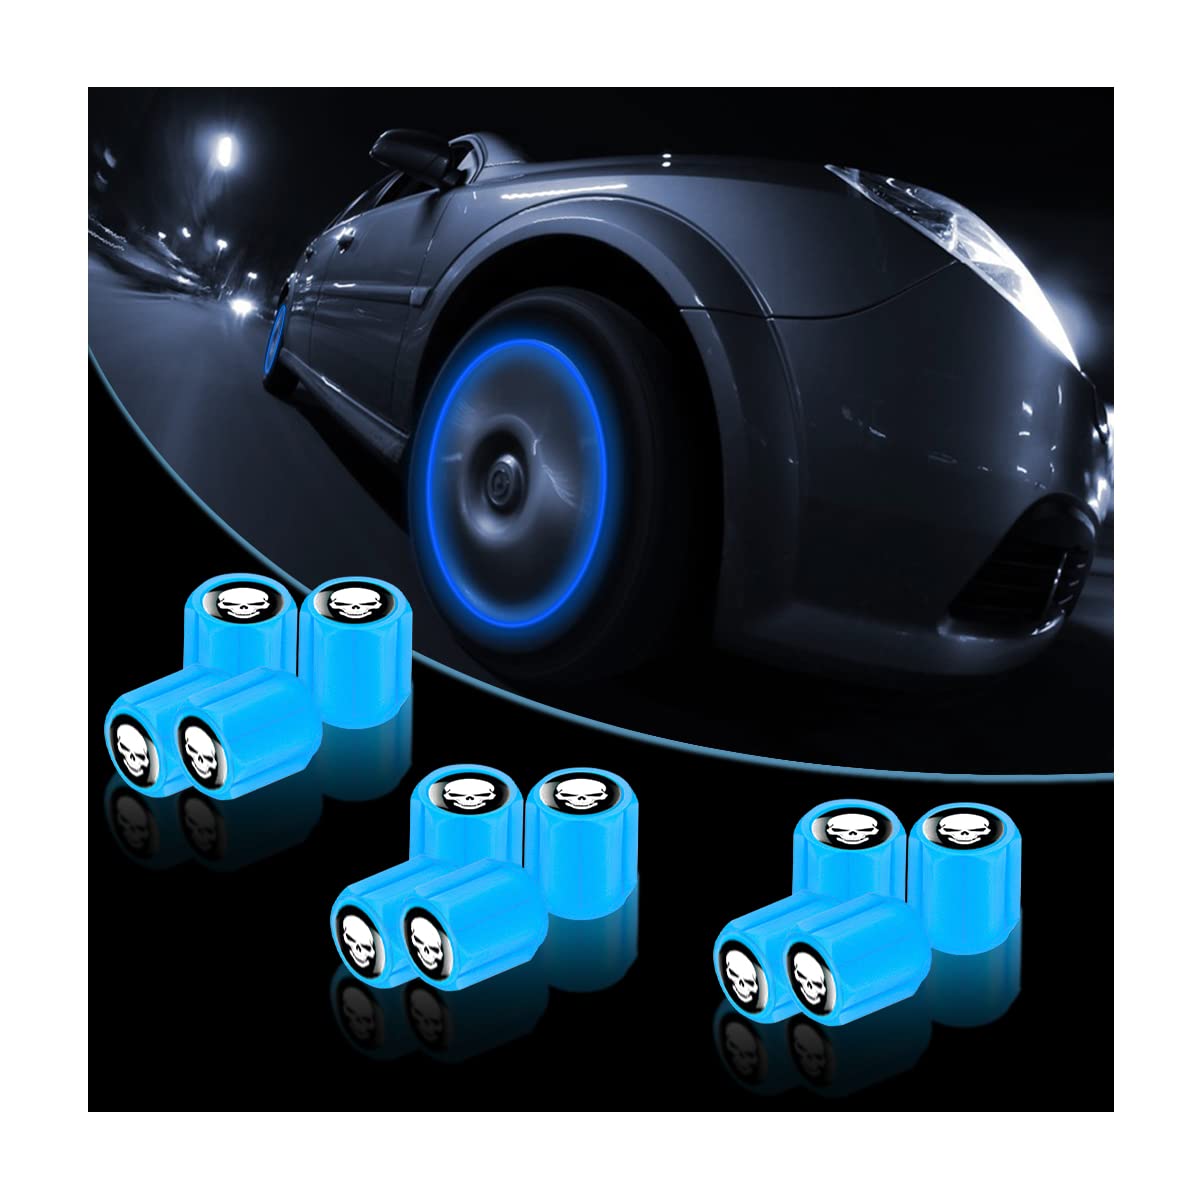 Adunsiaoto 12 Stück Luminous Tyre Valve Caps, Fluoreszierende Autoreifen Ventilkappen, Autoventil Kappe Leuchtend, Noctiluzous Auto-Reifenventilkappen(Blau) von Adunsiaoto